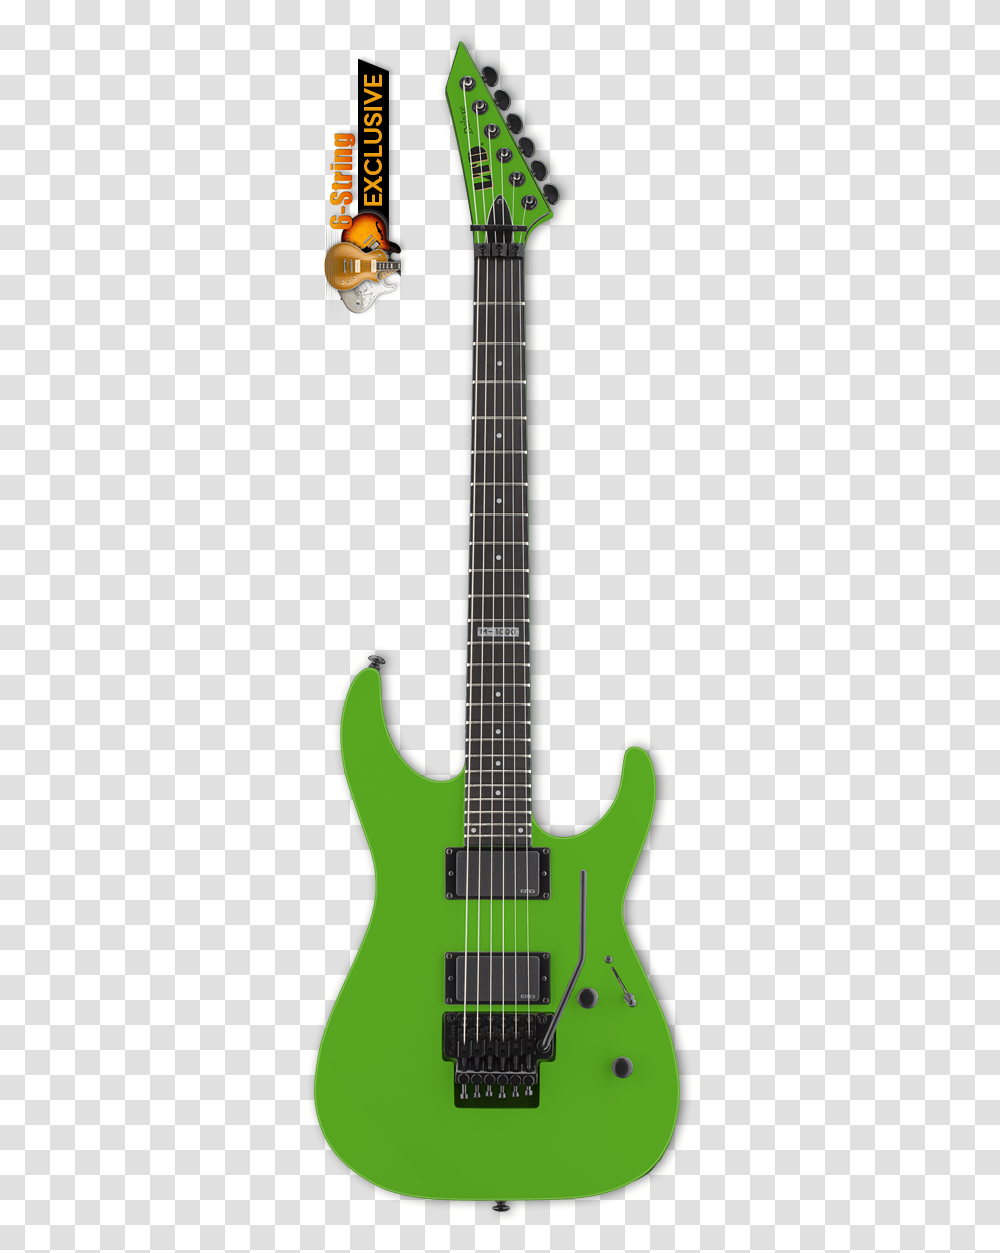 Esp Ltd M 1000 Neon Green Electric Guitar Esp Ltd Mh 400 Blupfd, Leisure Activities, Musical Instrument, Bass Guitar Transparent Png